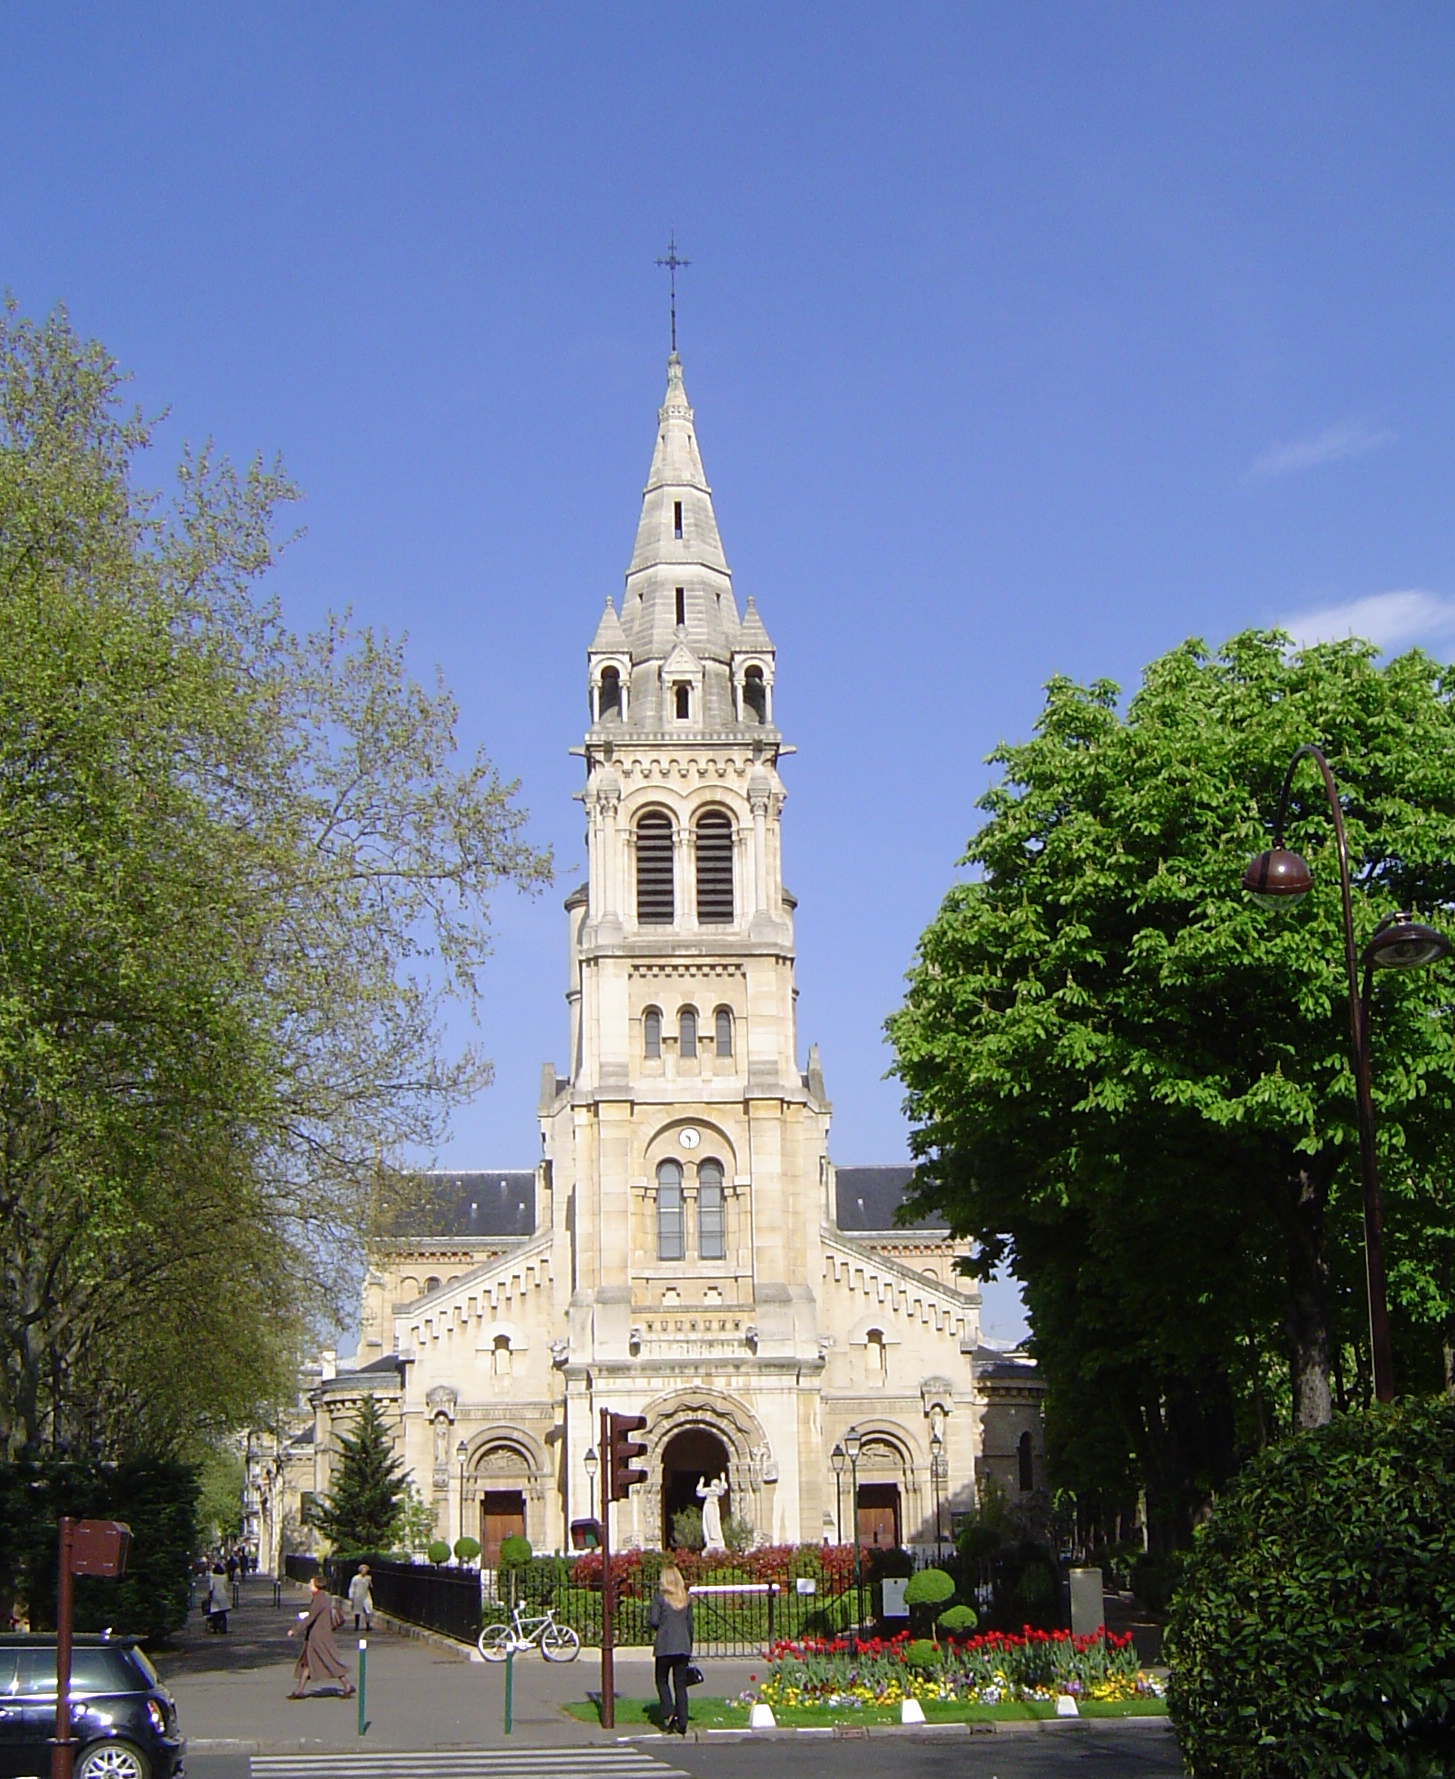 Façade de l'Eglise St-Pierre de Neuilly sur seine